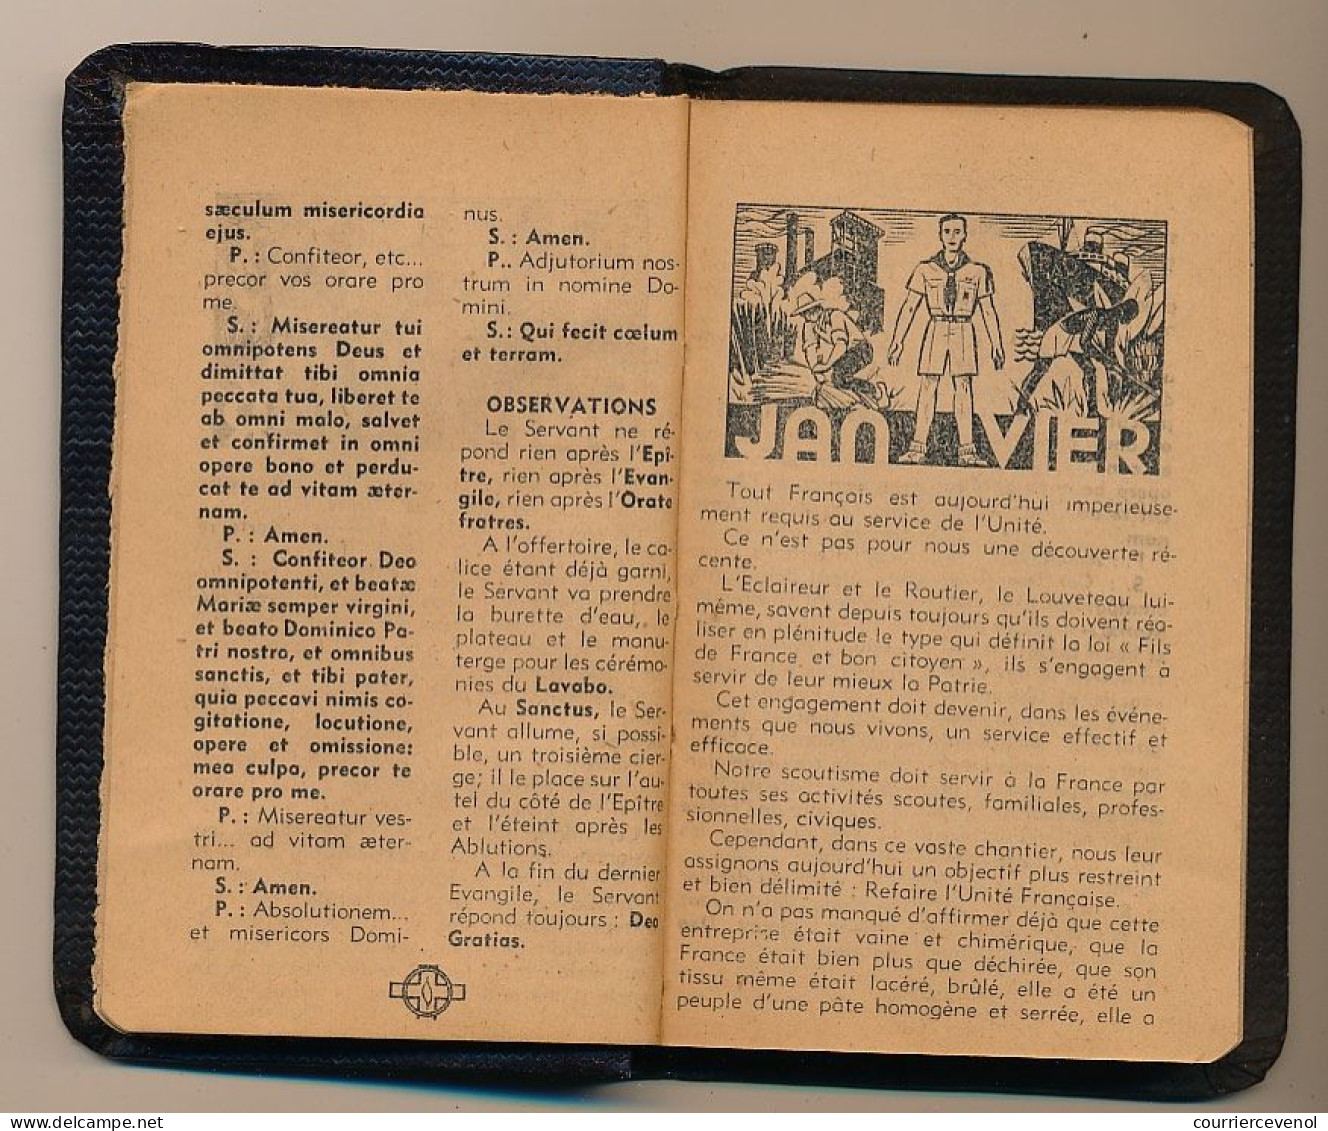 FRANCE - SCOUTISME - Petit Agenda "KIM 1945" - 7,5cm X 11,5cm - Année 1945, Pour Scouts Et Guides De France - Scoutismo